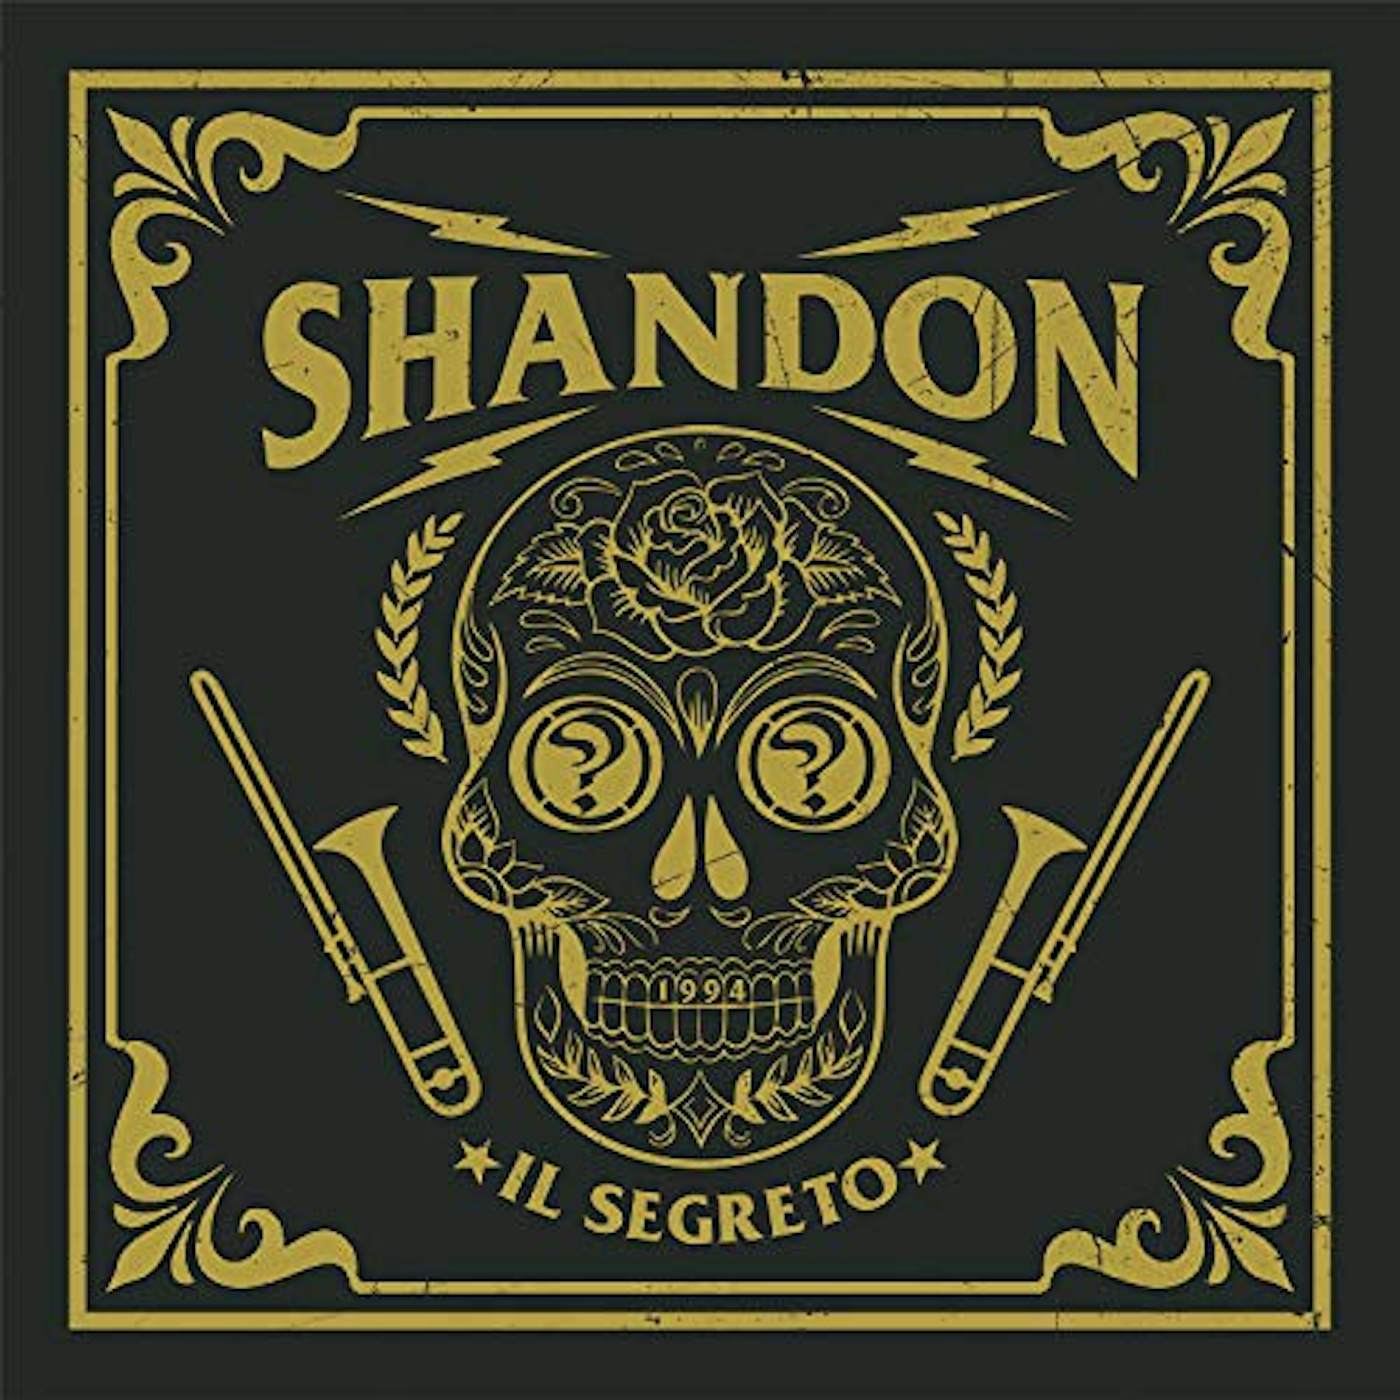 Shandon IL SEGRETO CD